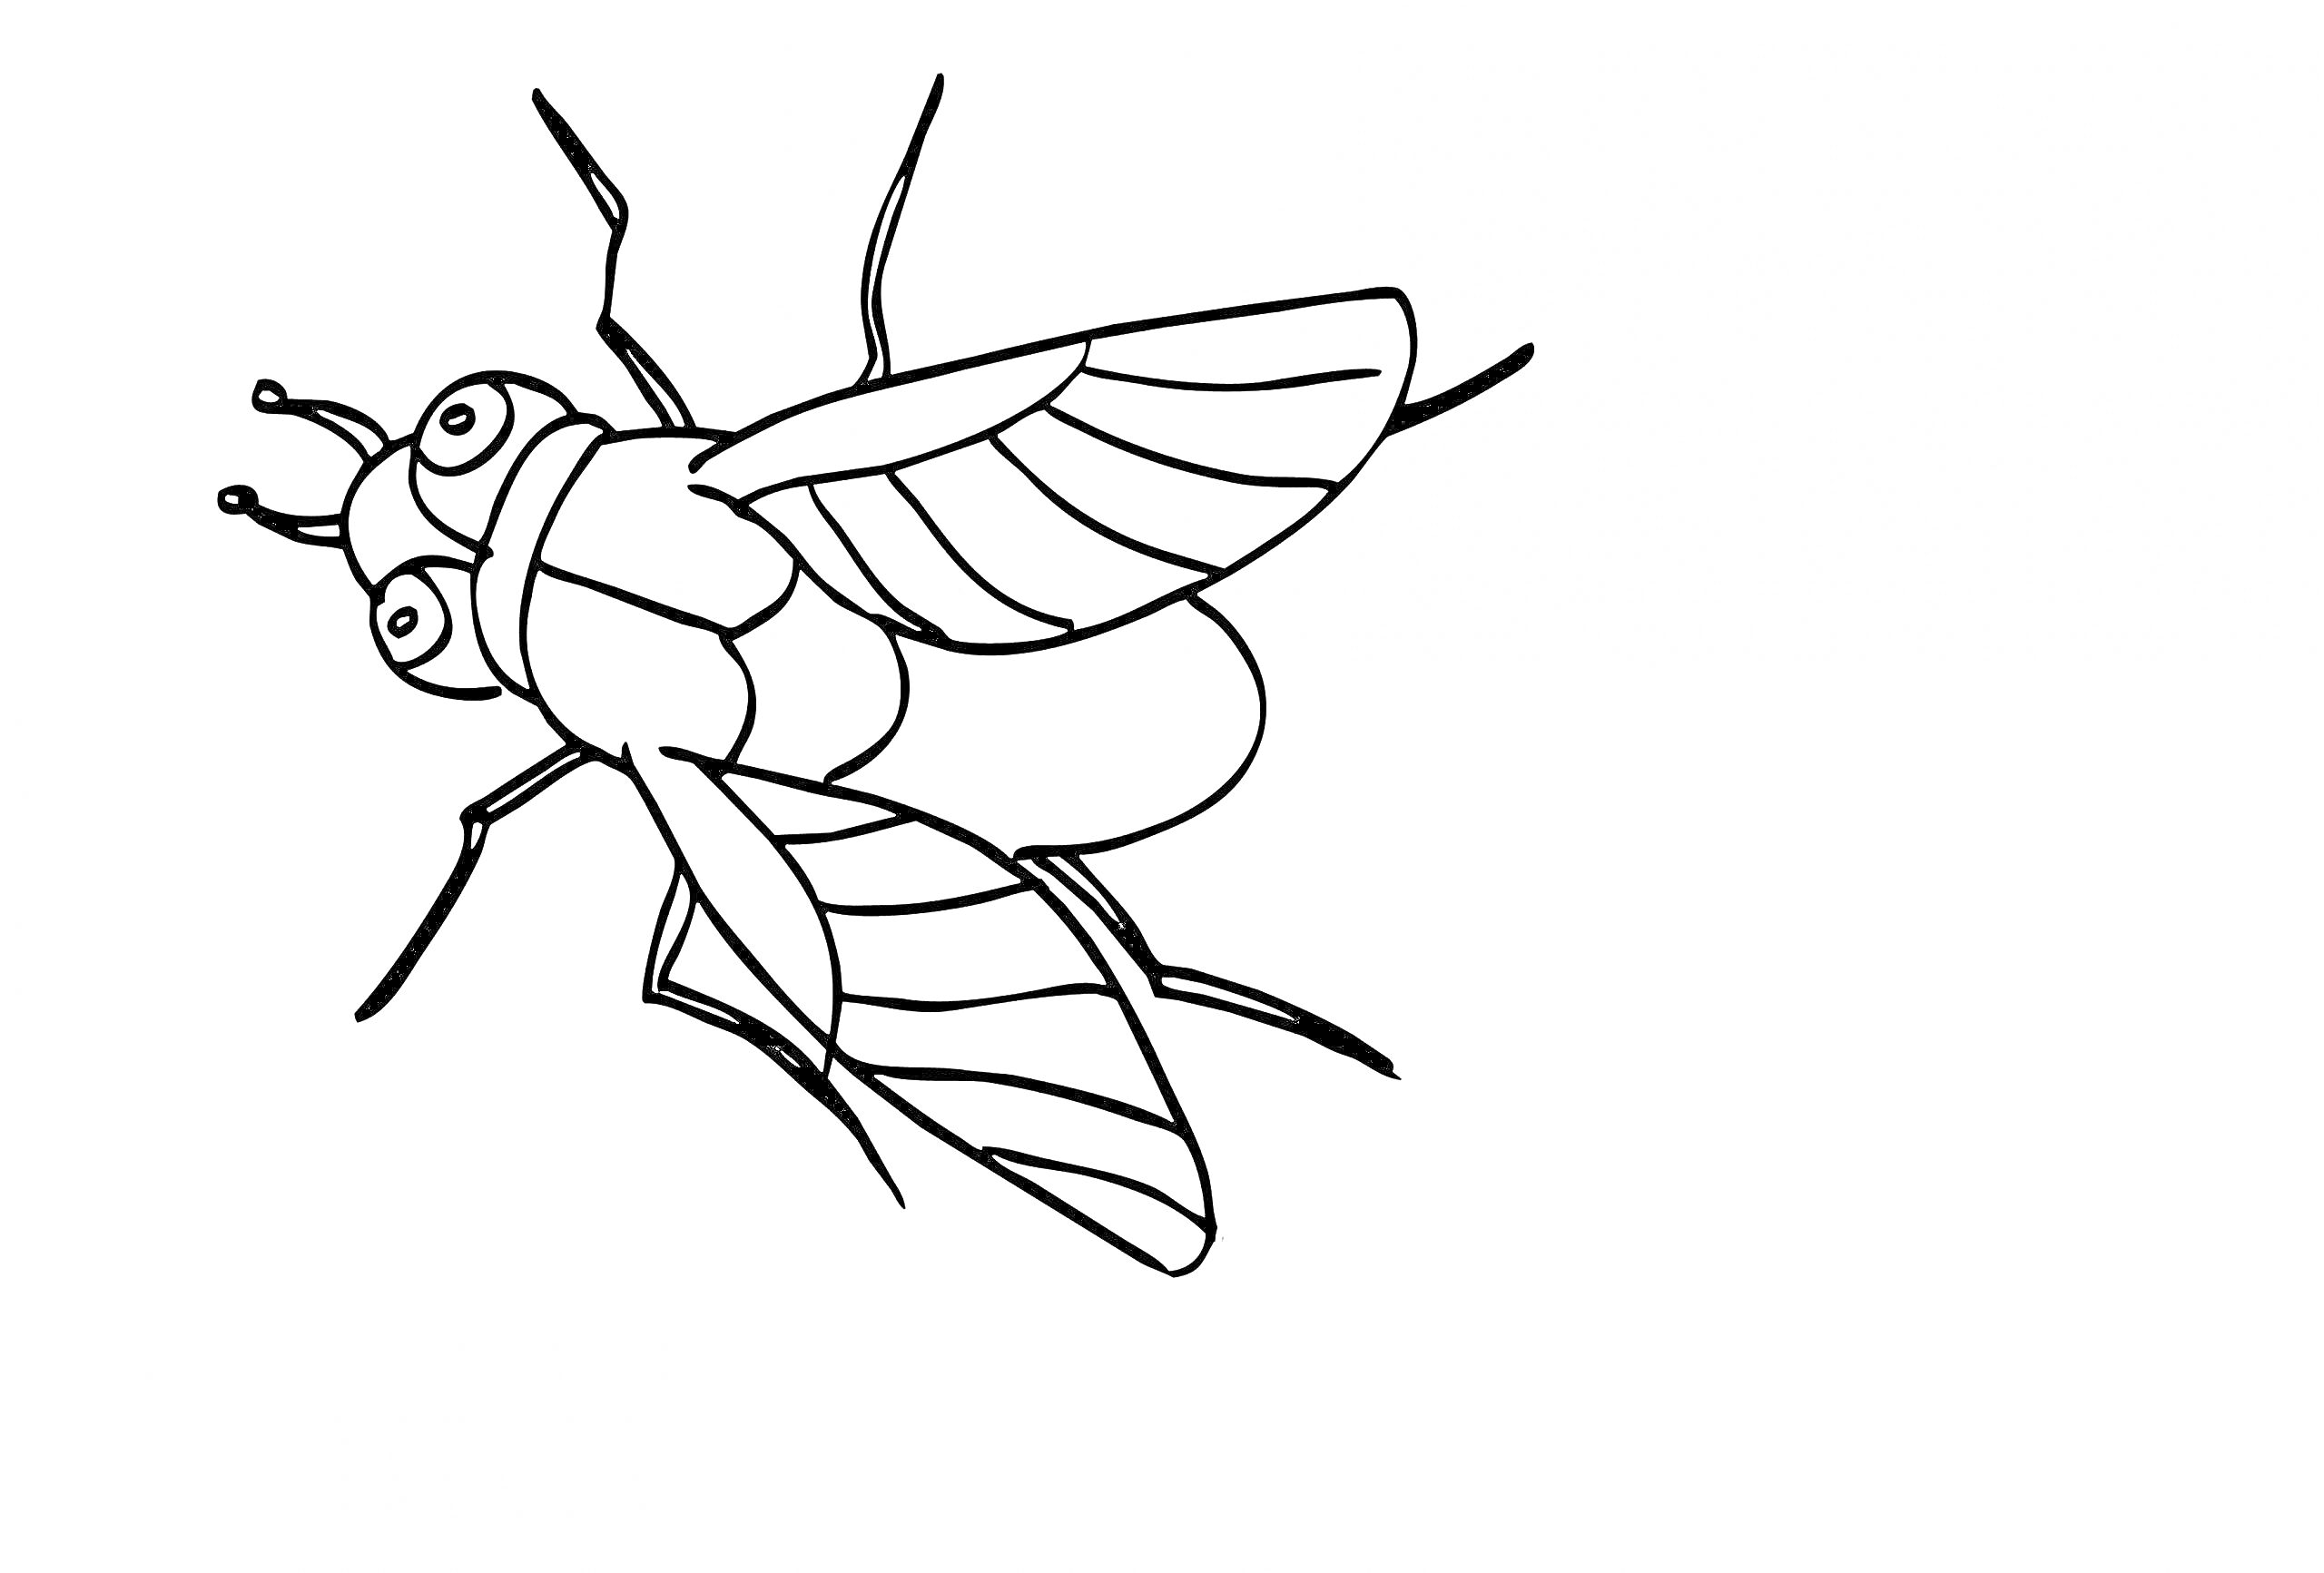 Раскраска Раскраска с изображением мухи с шестью лапками и двумя крыльями